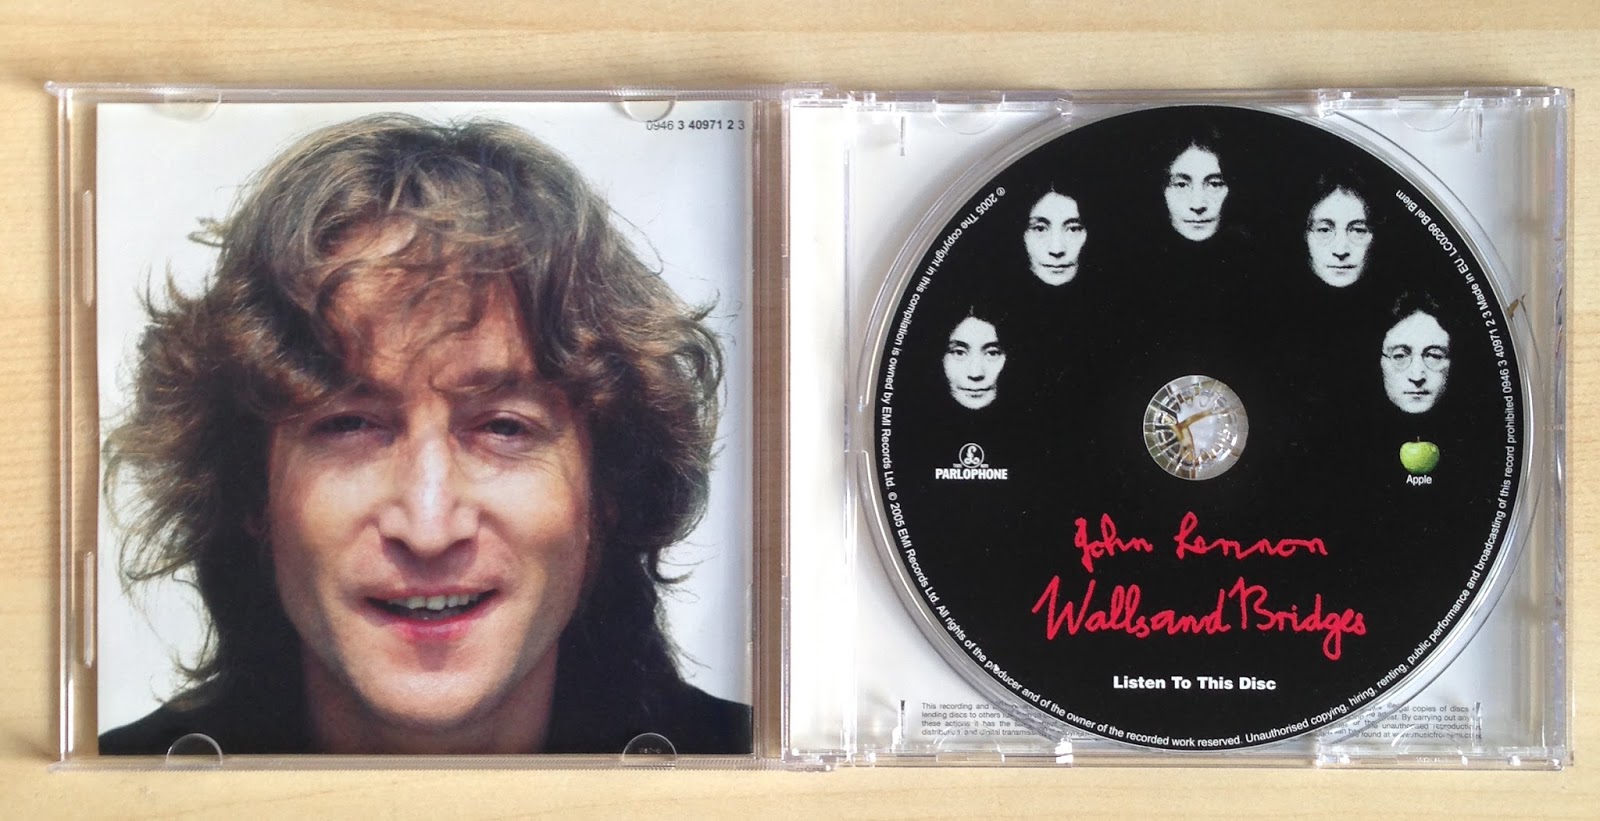 John Lennon Walls And Bridges Nov 2005 Remaster Mine CD and Inlay - Walls and Bridges – John Lennon / 44 anos de História!